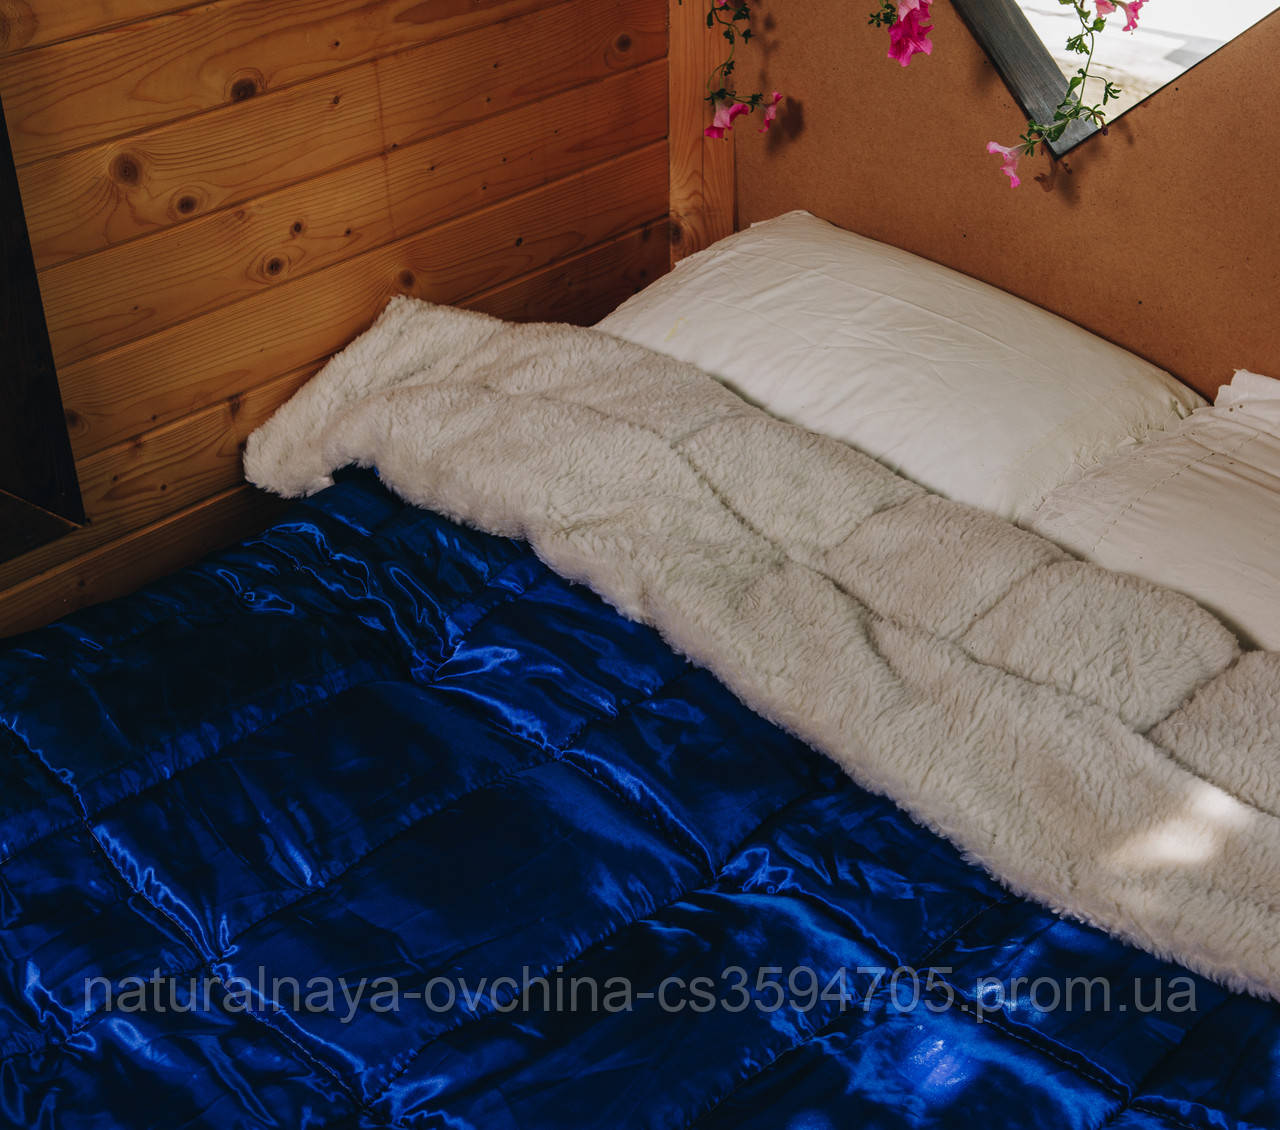 

Одеяло ткань+мех сатин высший сорт, одеяло из овчины зимнее сатин, одеяло стеганое сатин на овчине экстра, Синий